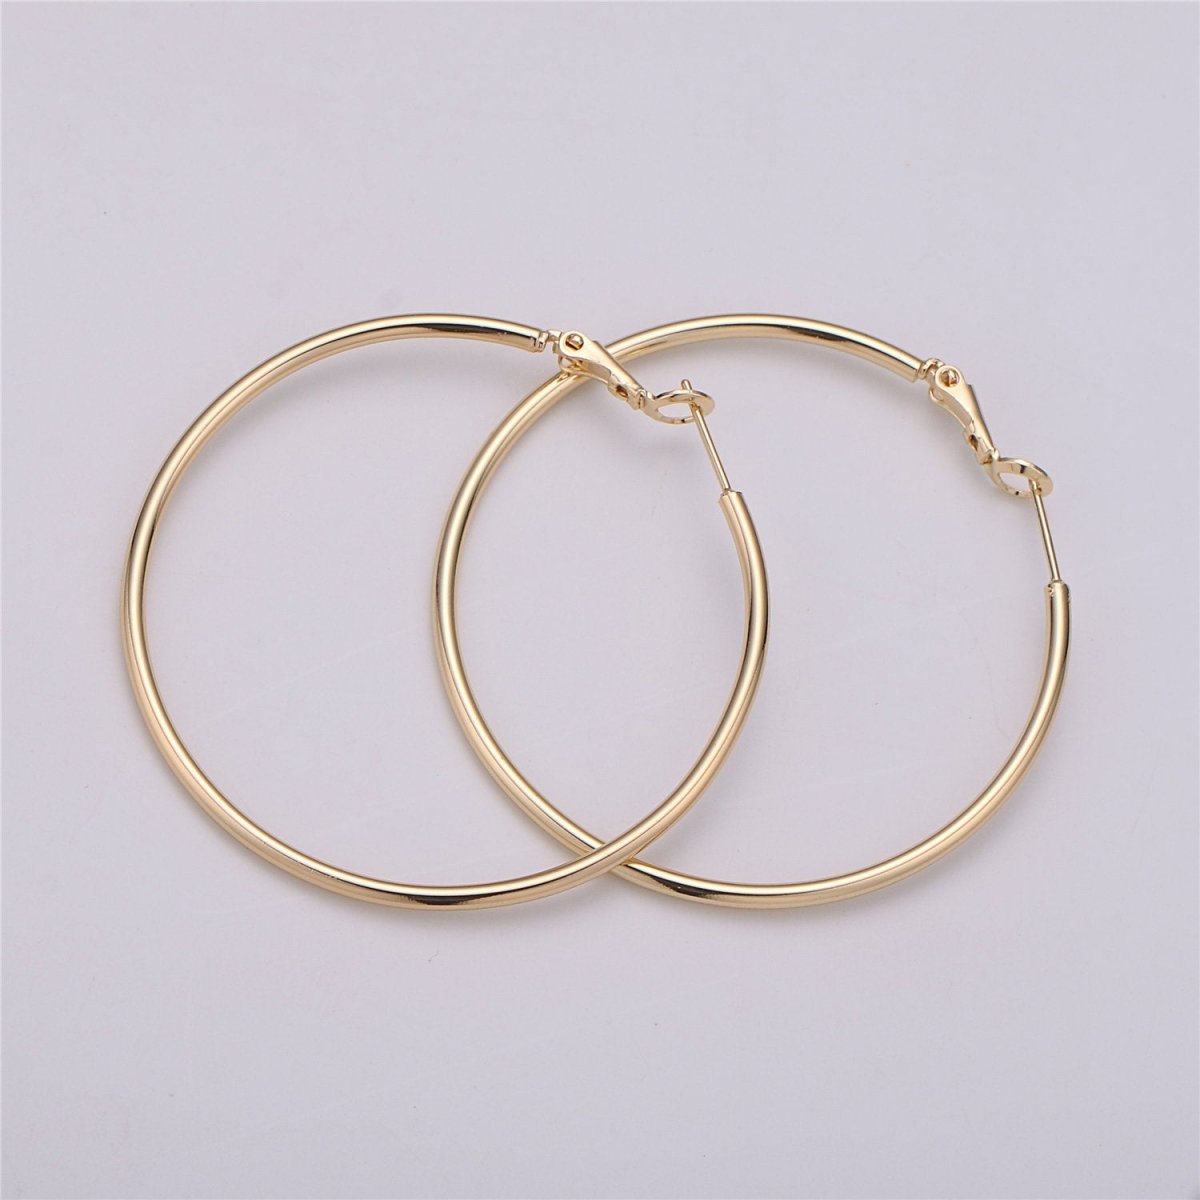 50mm 55mm Gold filled Hoops Earrings w/Clutch, 14k Gold-Filled Findings 1 Pair 1mm Gold Filled Hoops, Hoop Earrings Q-478 to Q-480 - DLUXCA